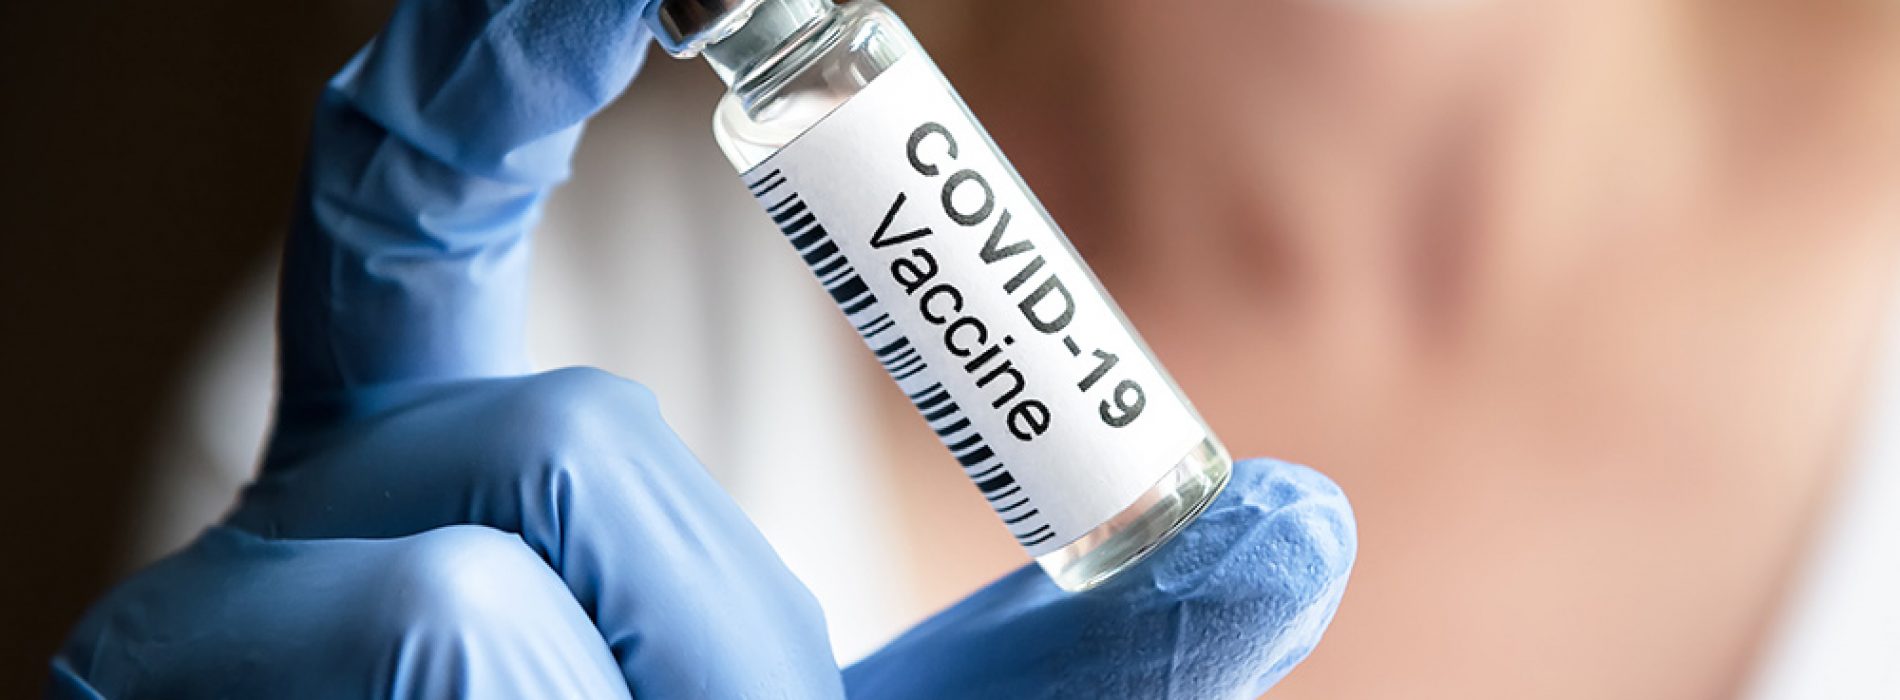 SCHOKKEND bewijs: COVID-shots zijn “van opzet giftig”, gemaakt met een duidelijke bedoeling om schade toe te brengen